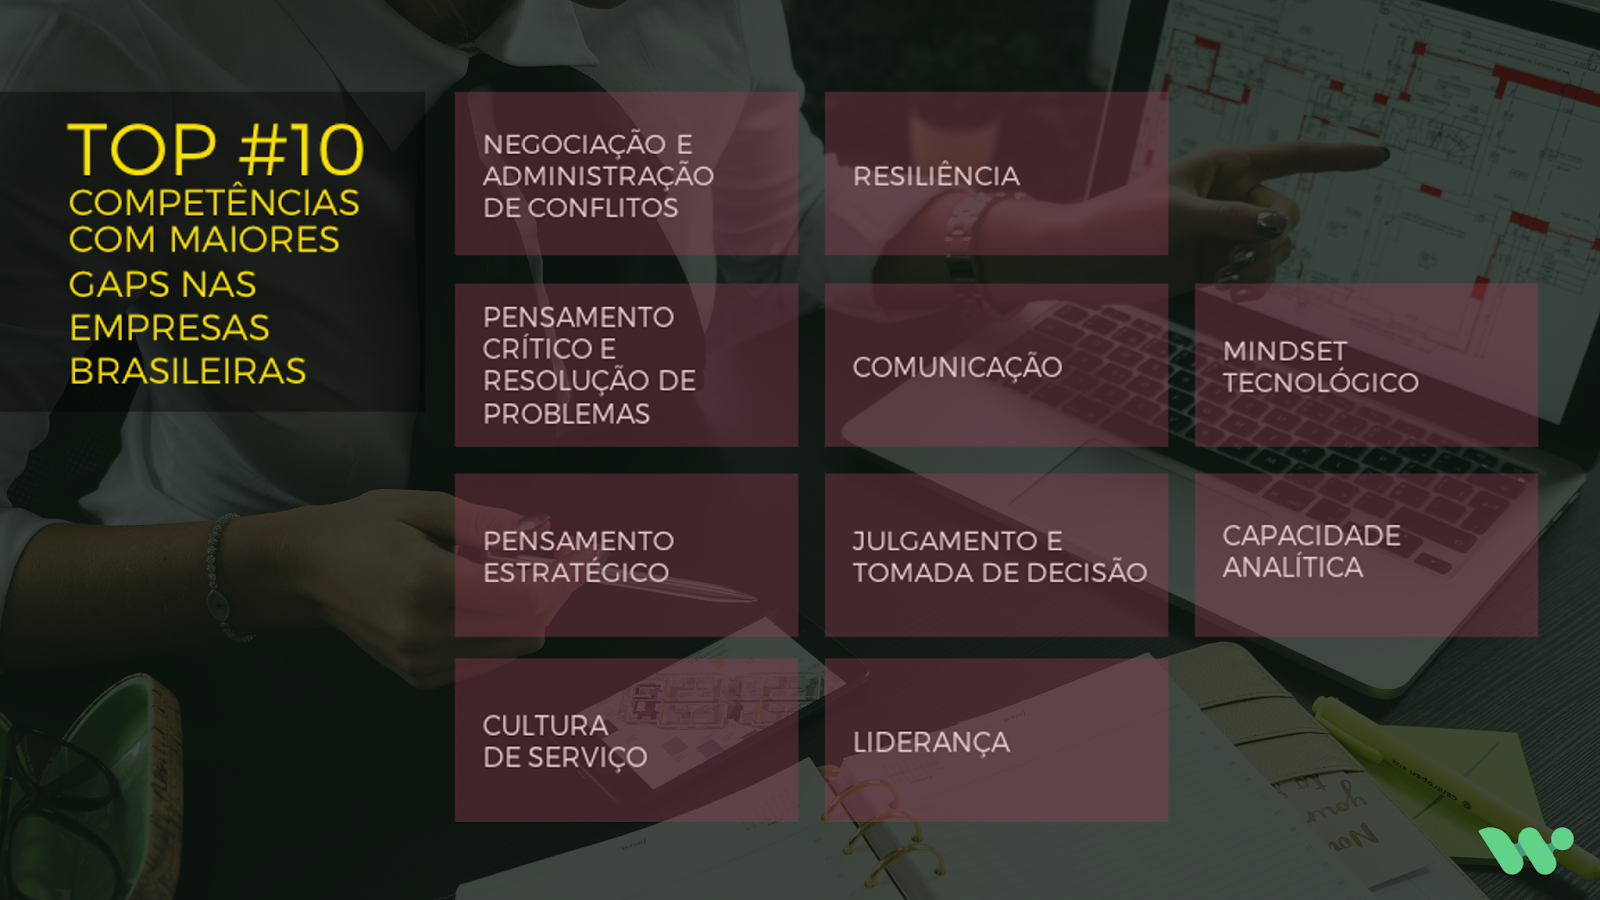 10 gaps de competências nas empresas brasileiras